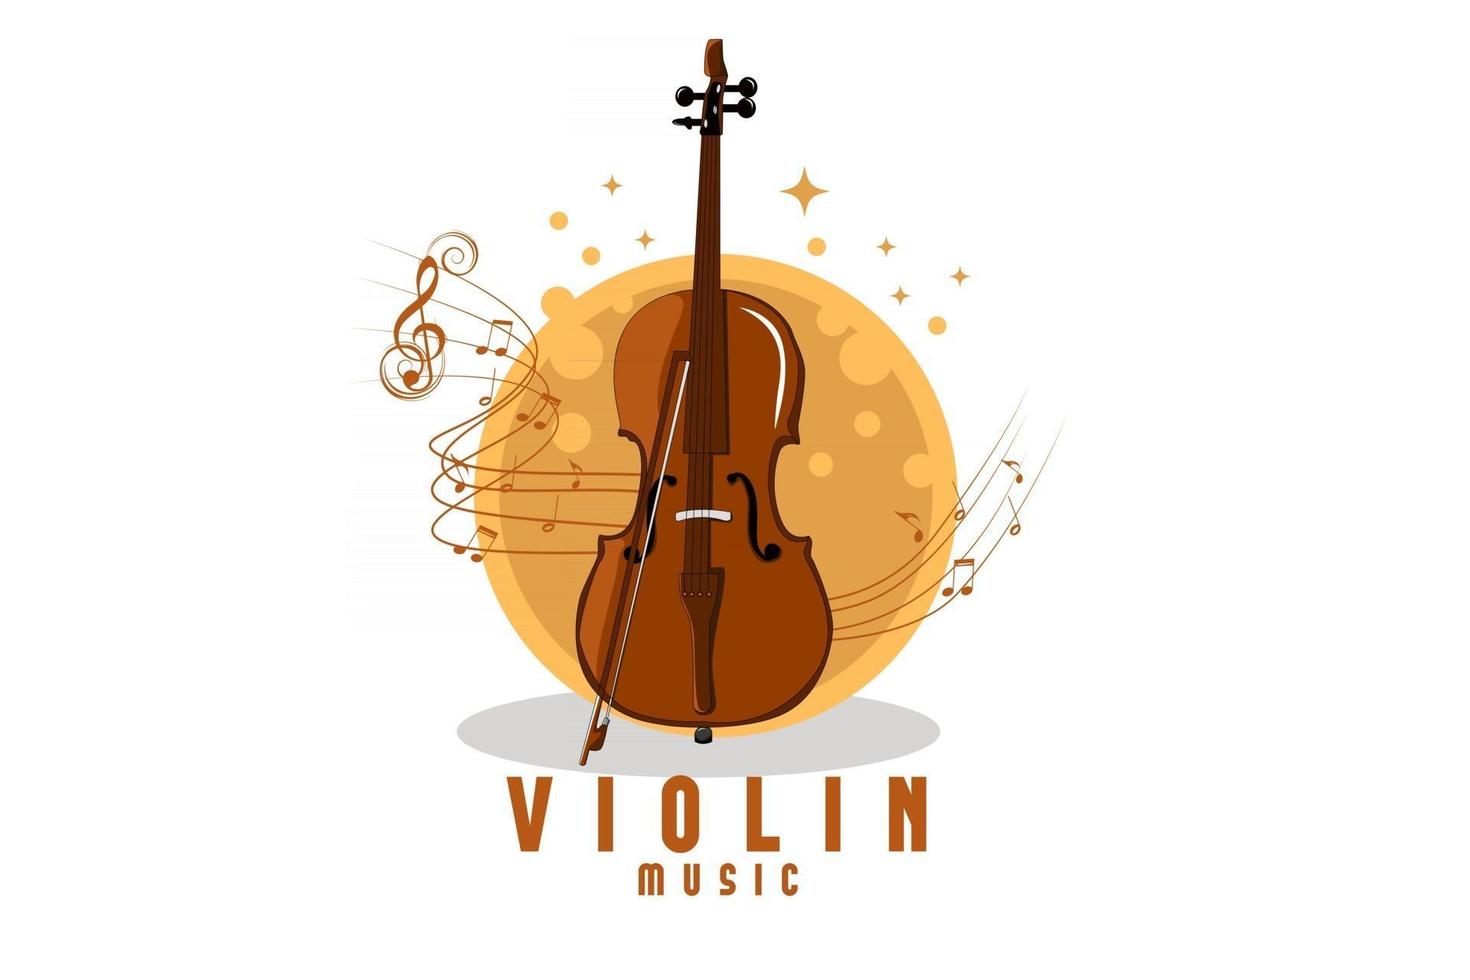 violin music illustration design vector